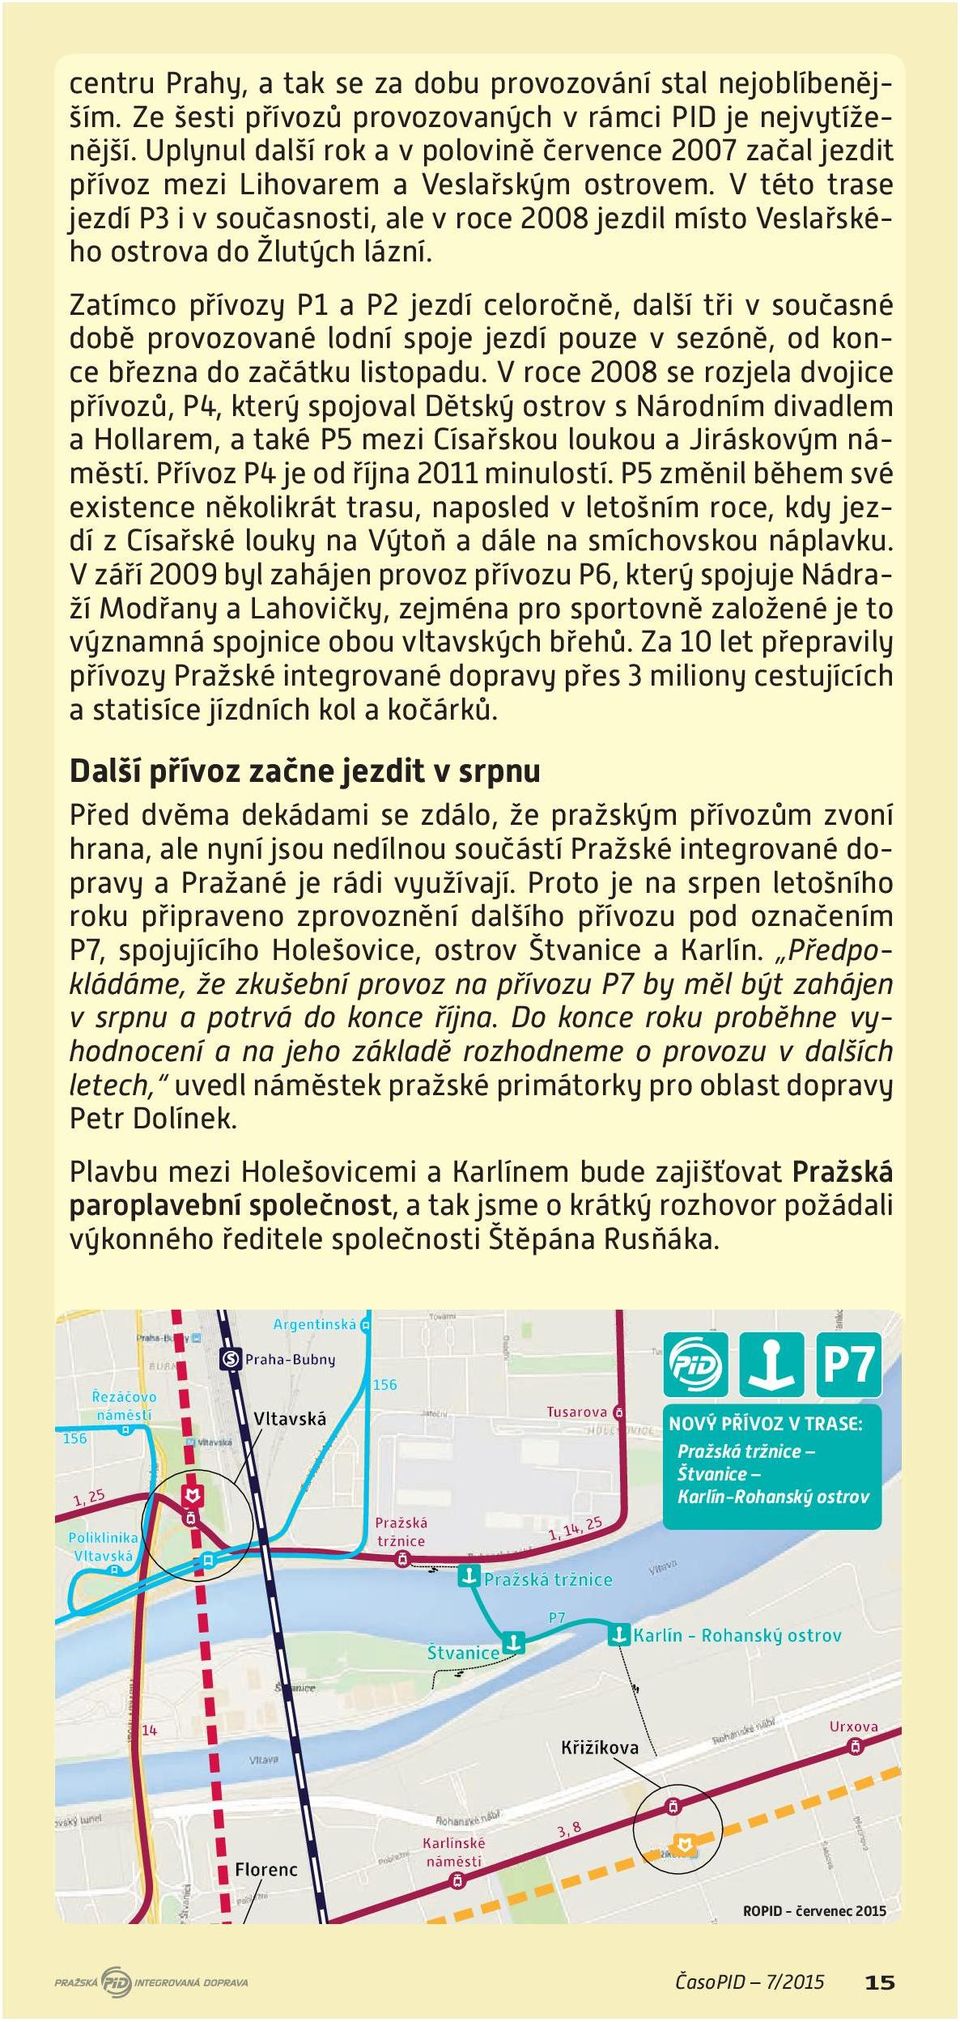 V této trase jezdí P3 i v současnosti, ale v roce 2008 jezdil místo Veslařského ostrova do Žlutých lázní.